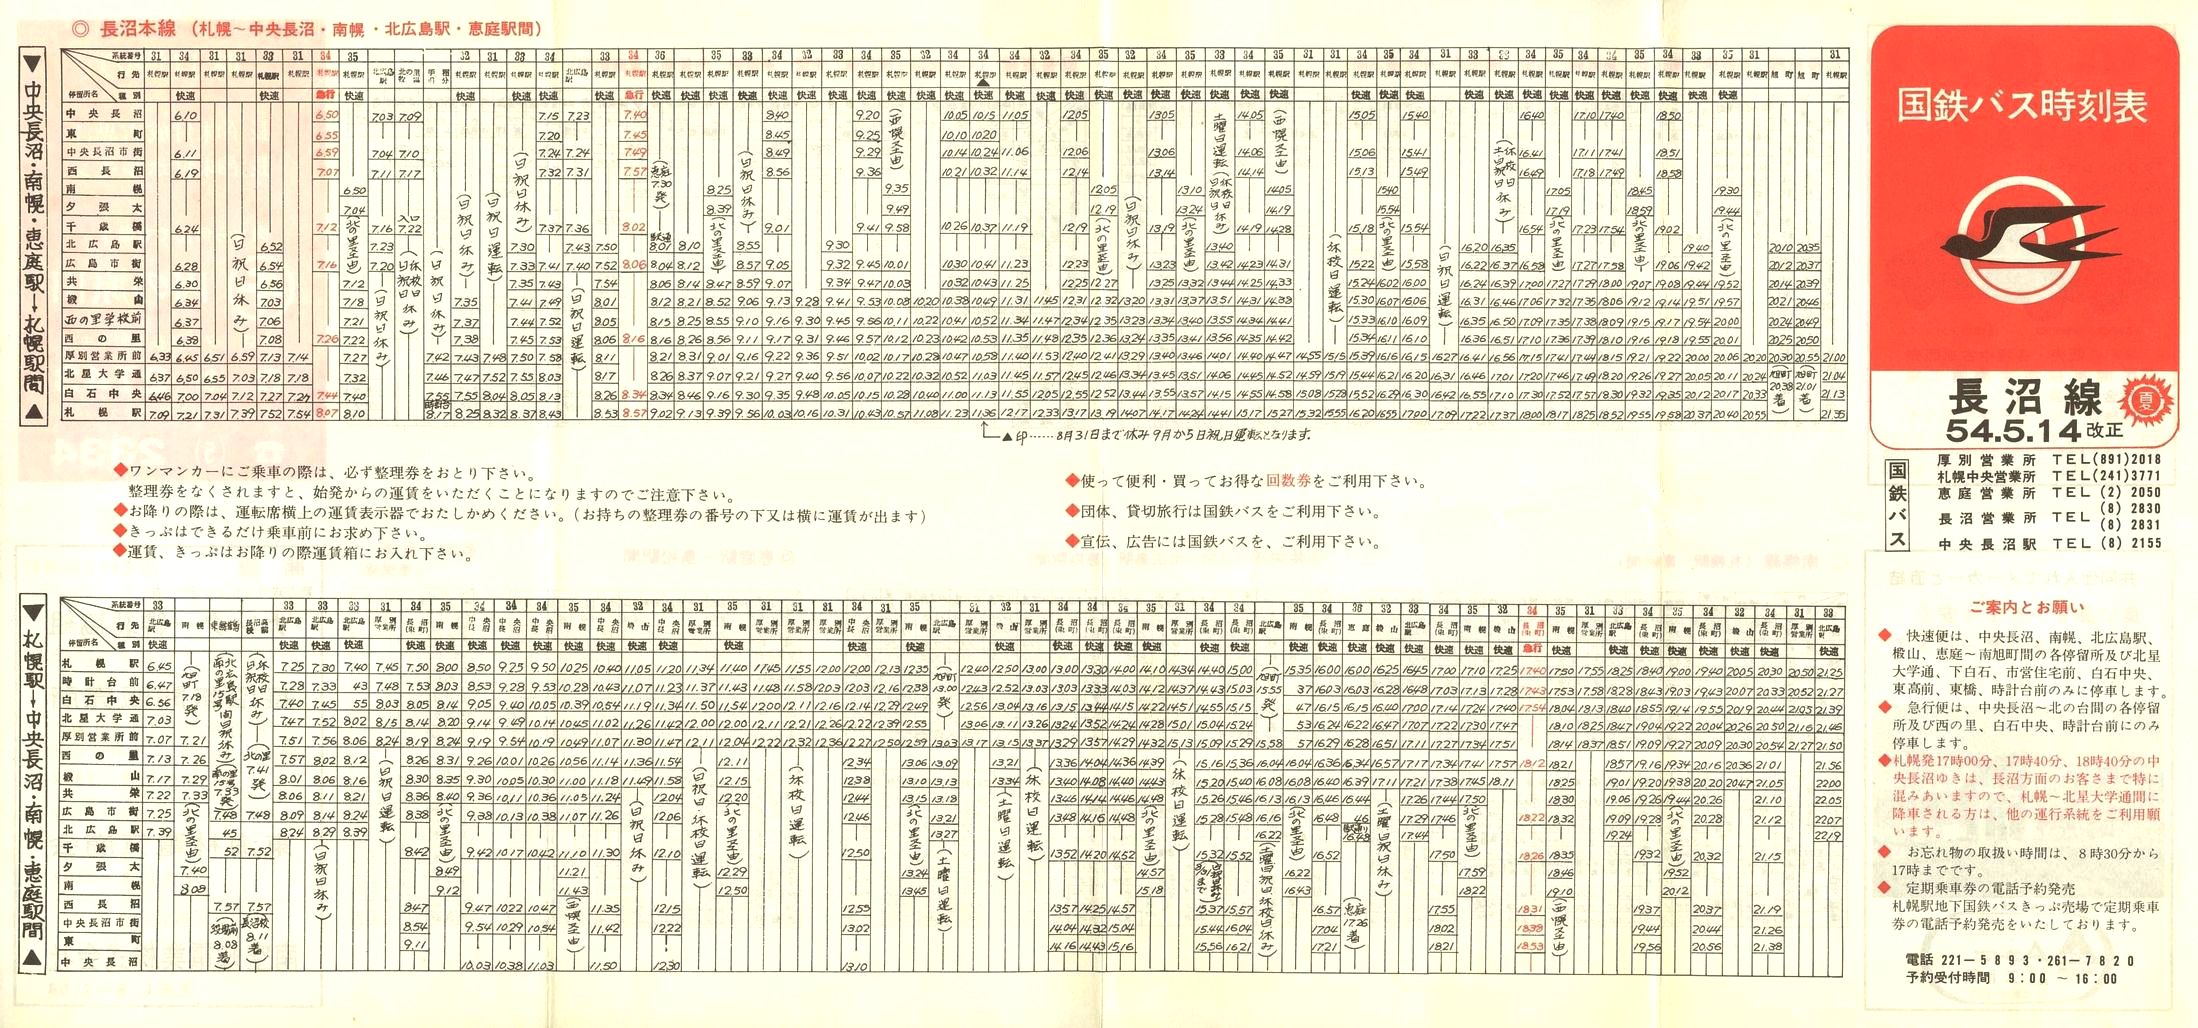 1979-05-14改正_国鉄バス_長沼線時刻表表面